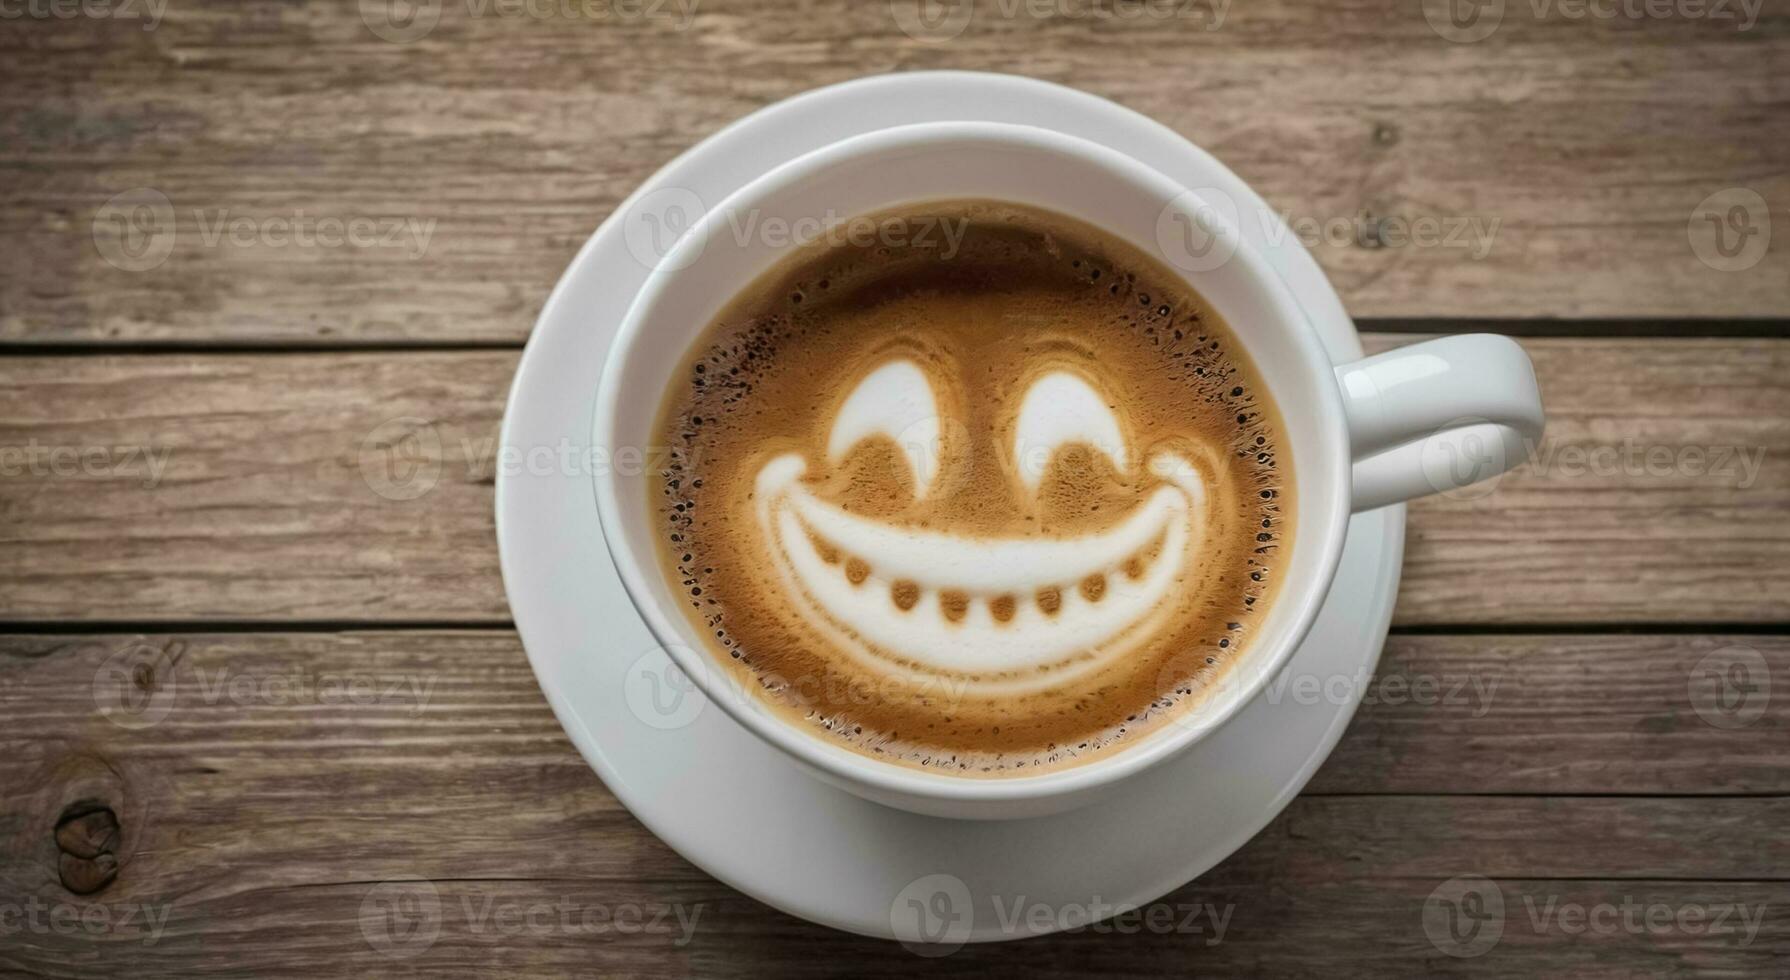 kopp av kaffe med en skum i de form av en leende ansikte, Bra morgon- symbol. foto